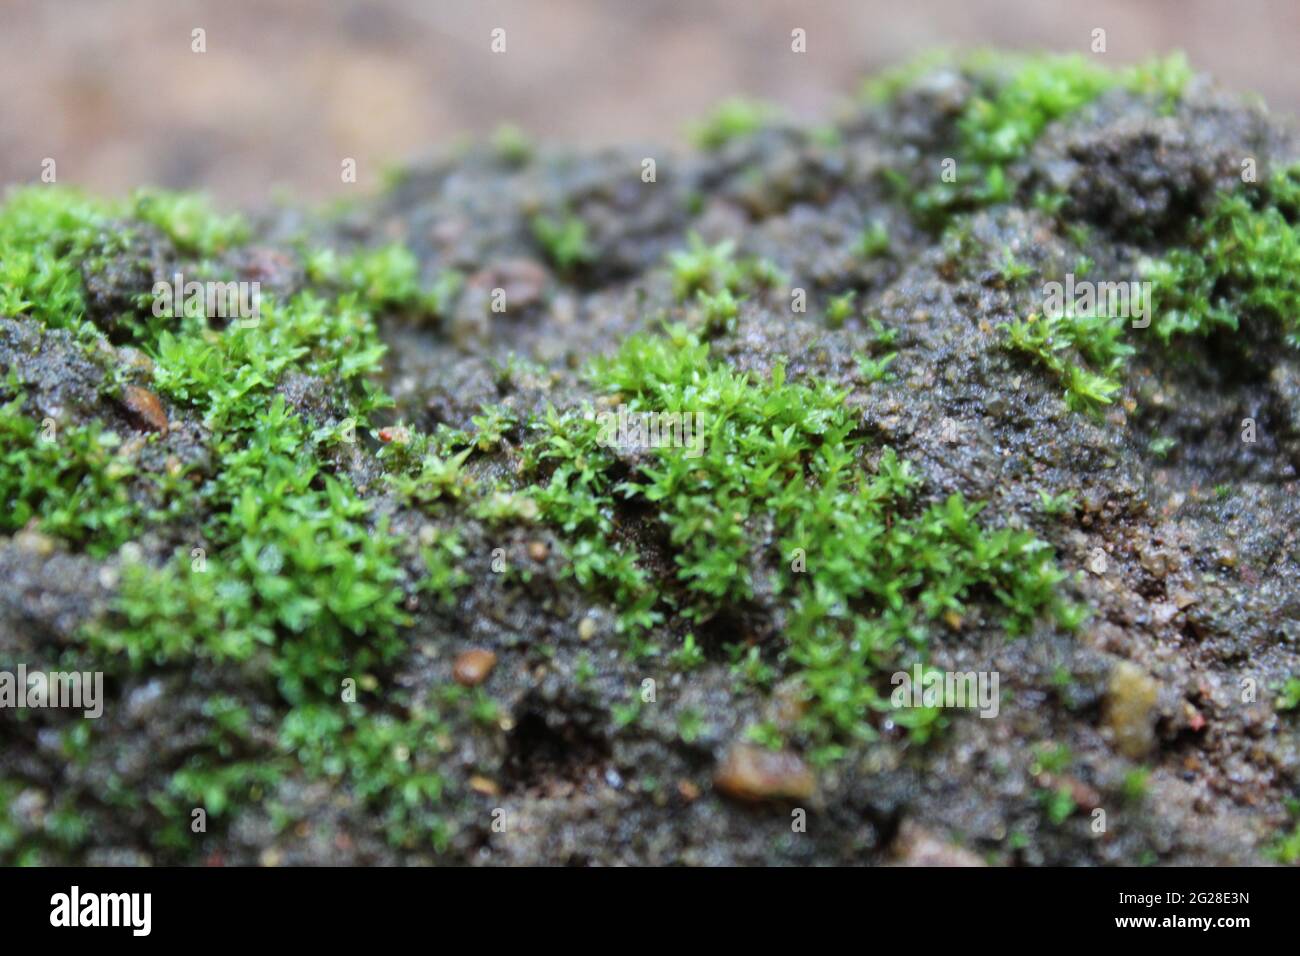 Zoom on Moss Growing on Rocks Stock Photo